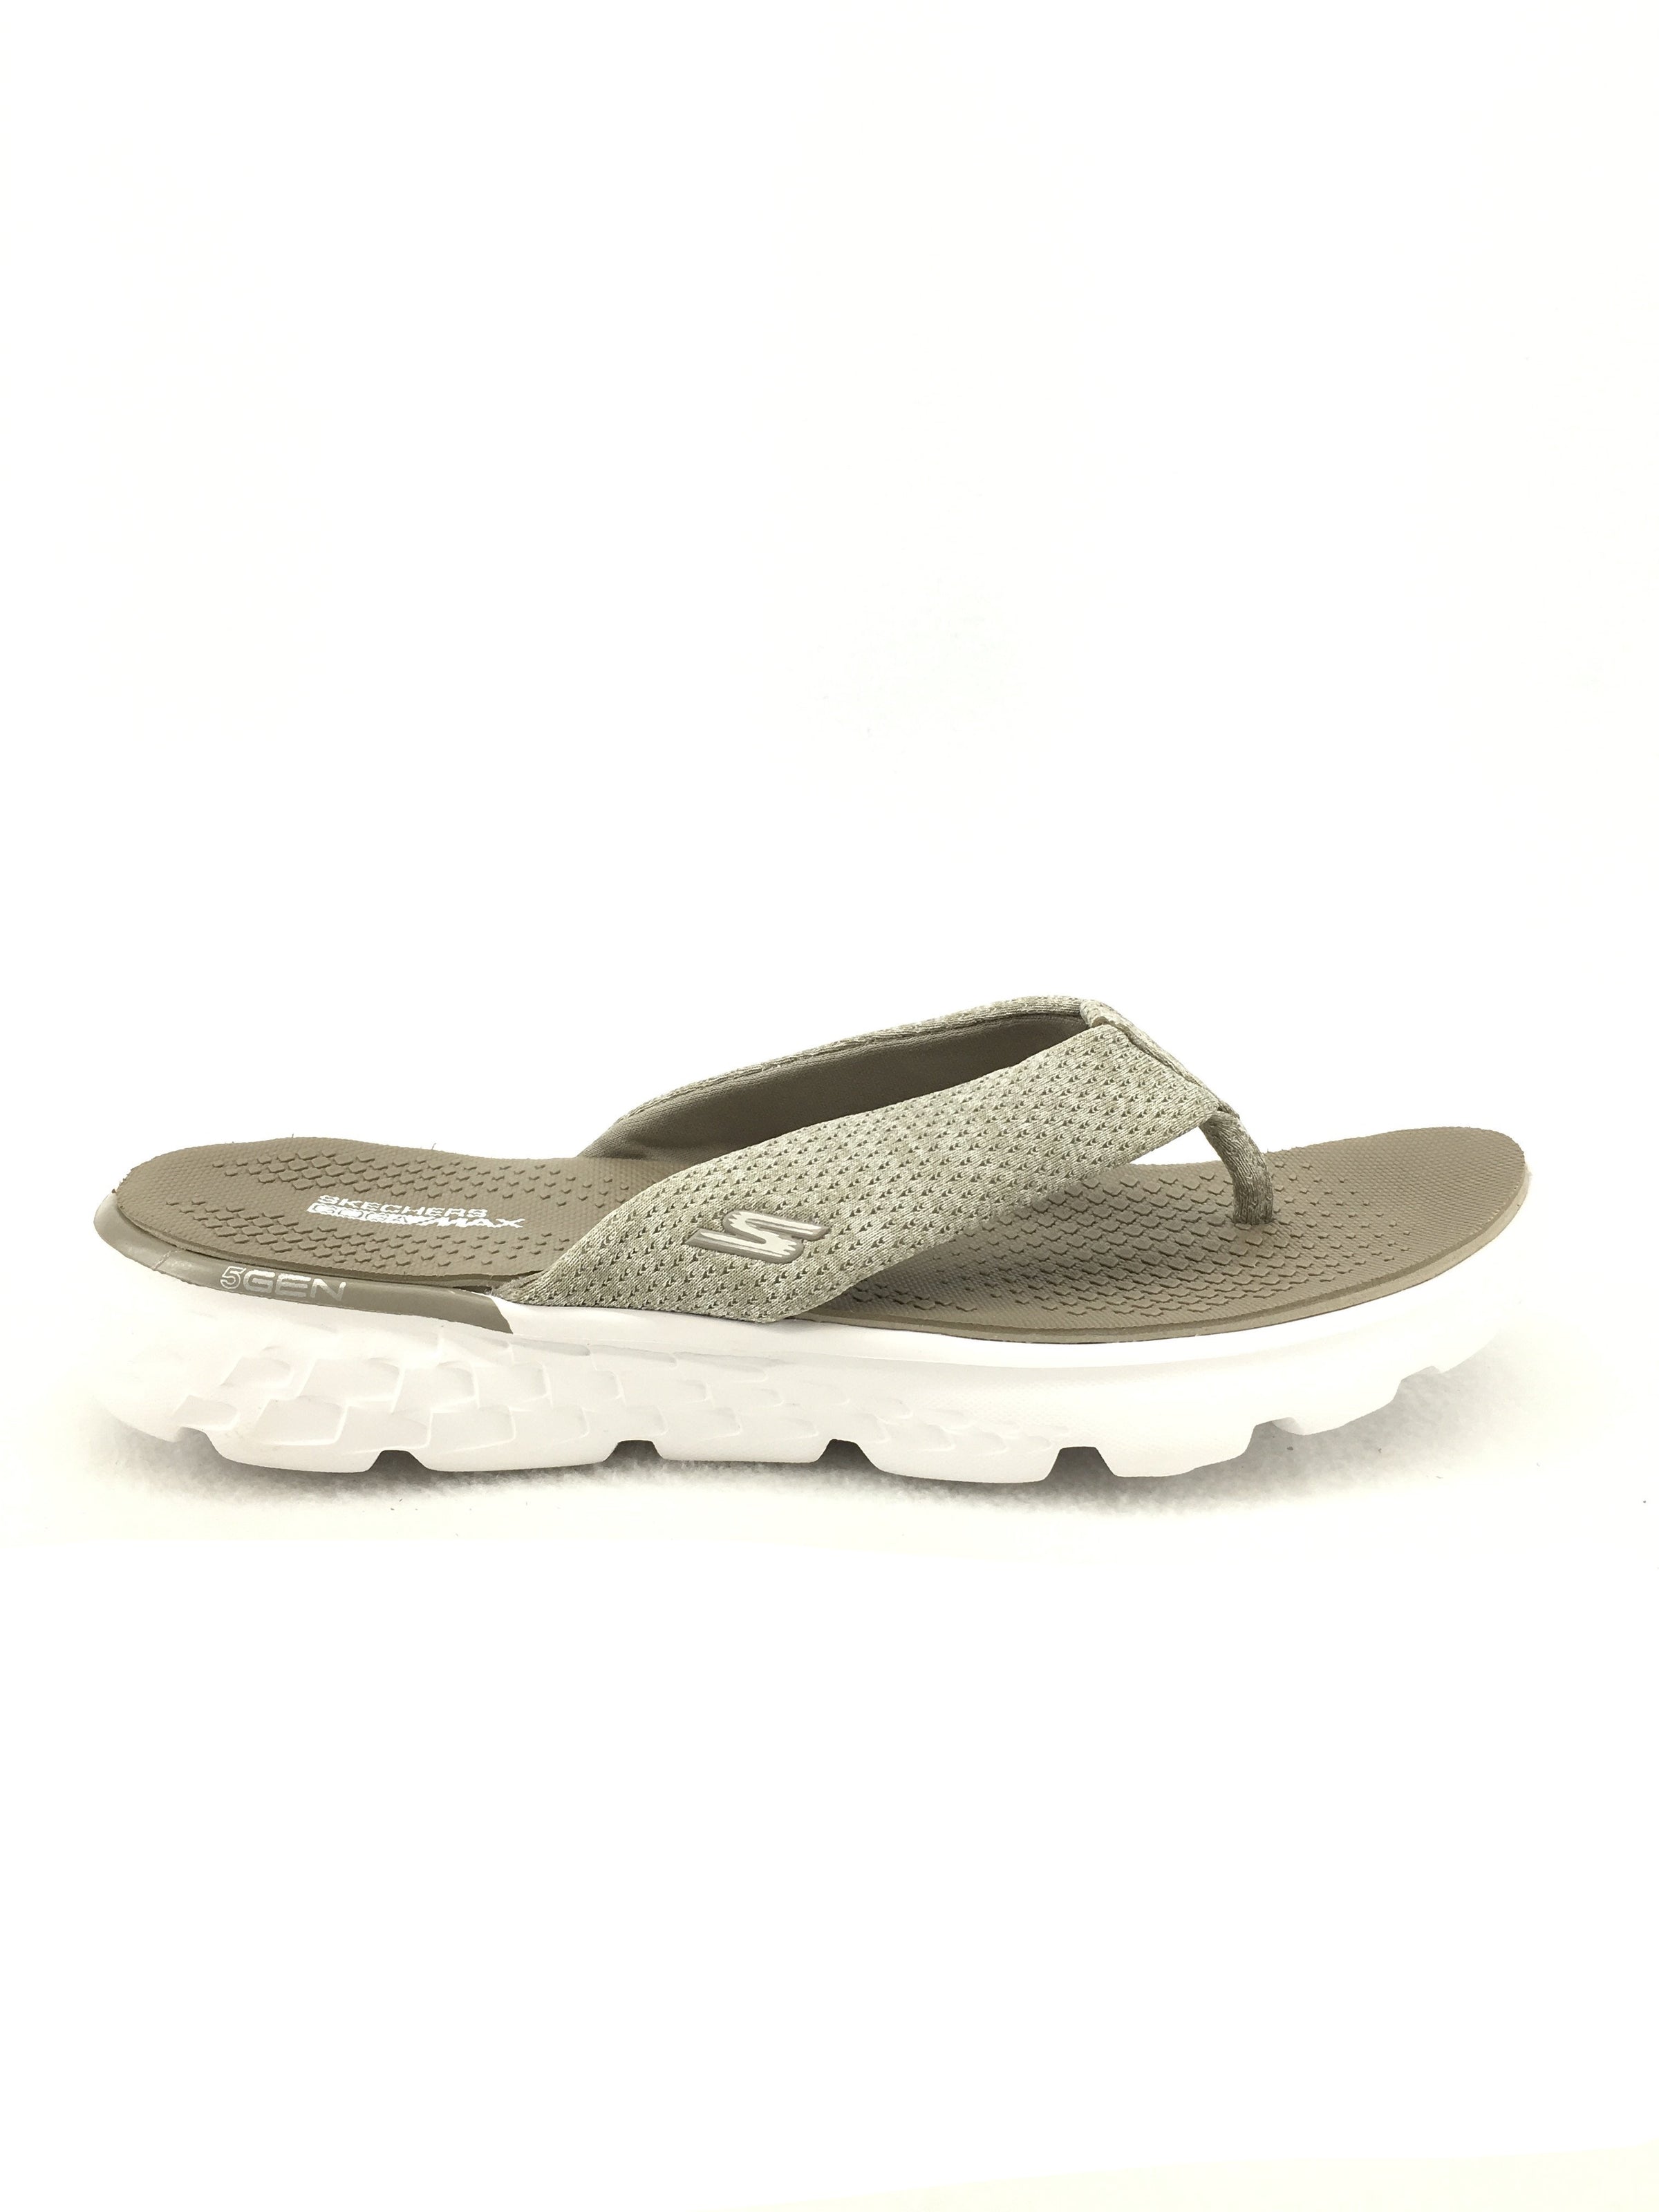 Skechers Comfort Flip Flops Size 8